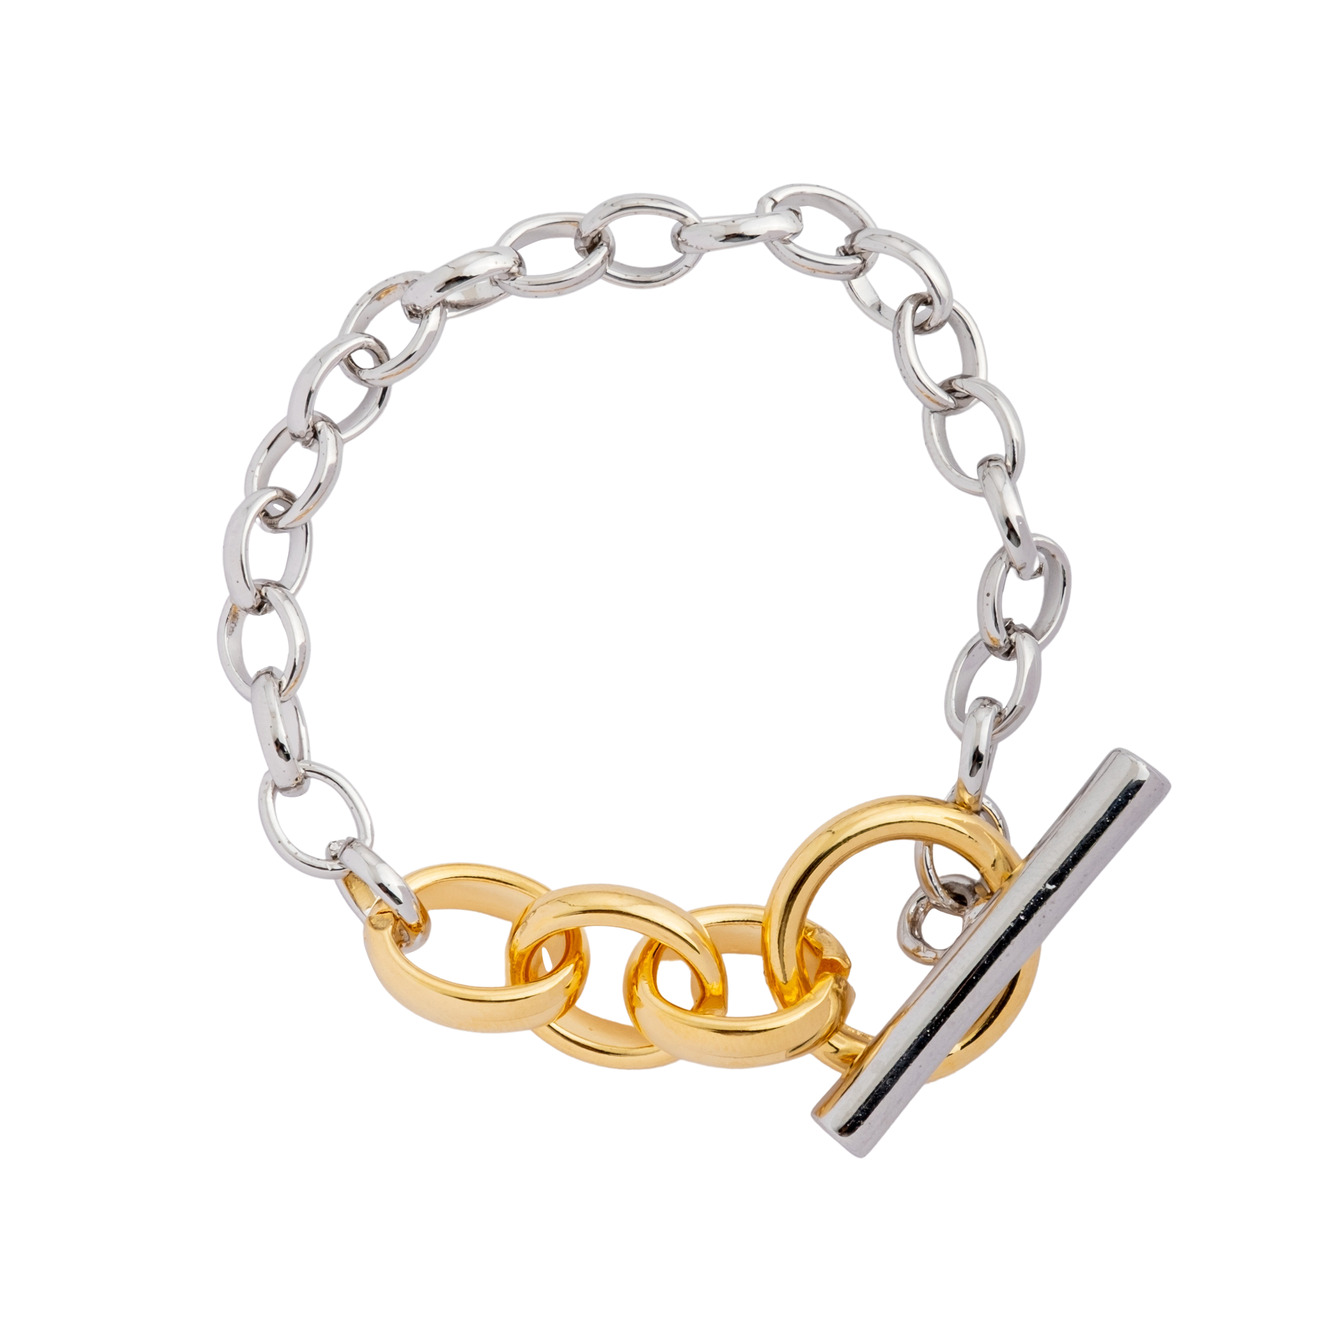 Aqua Серебристый браслет-цепь с золотистым замком